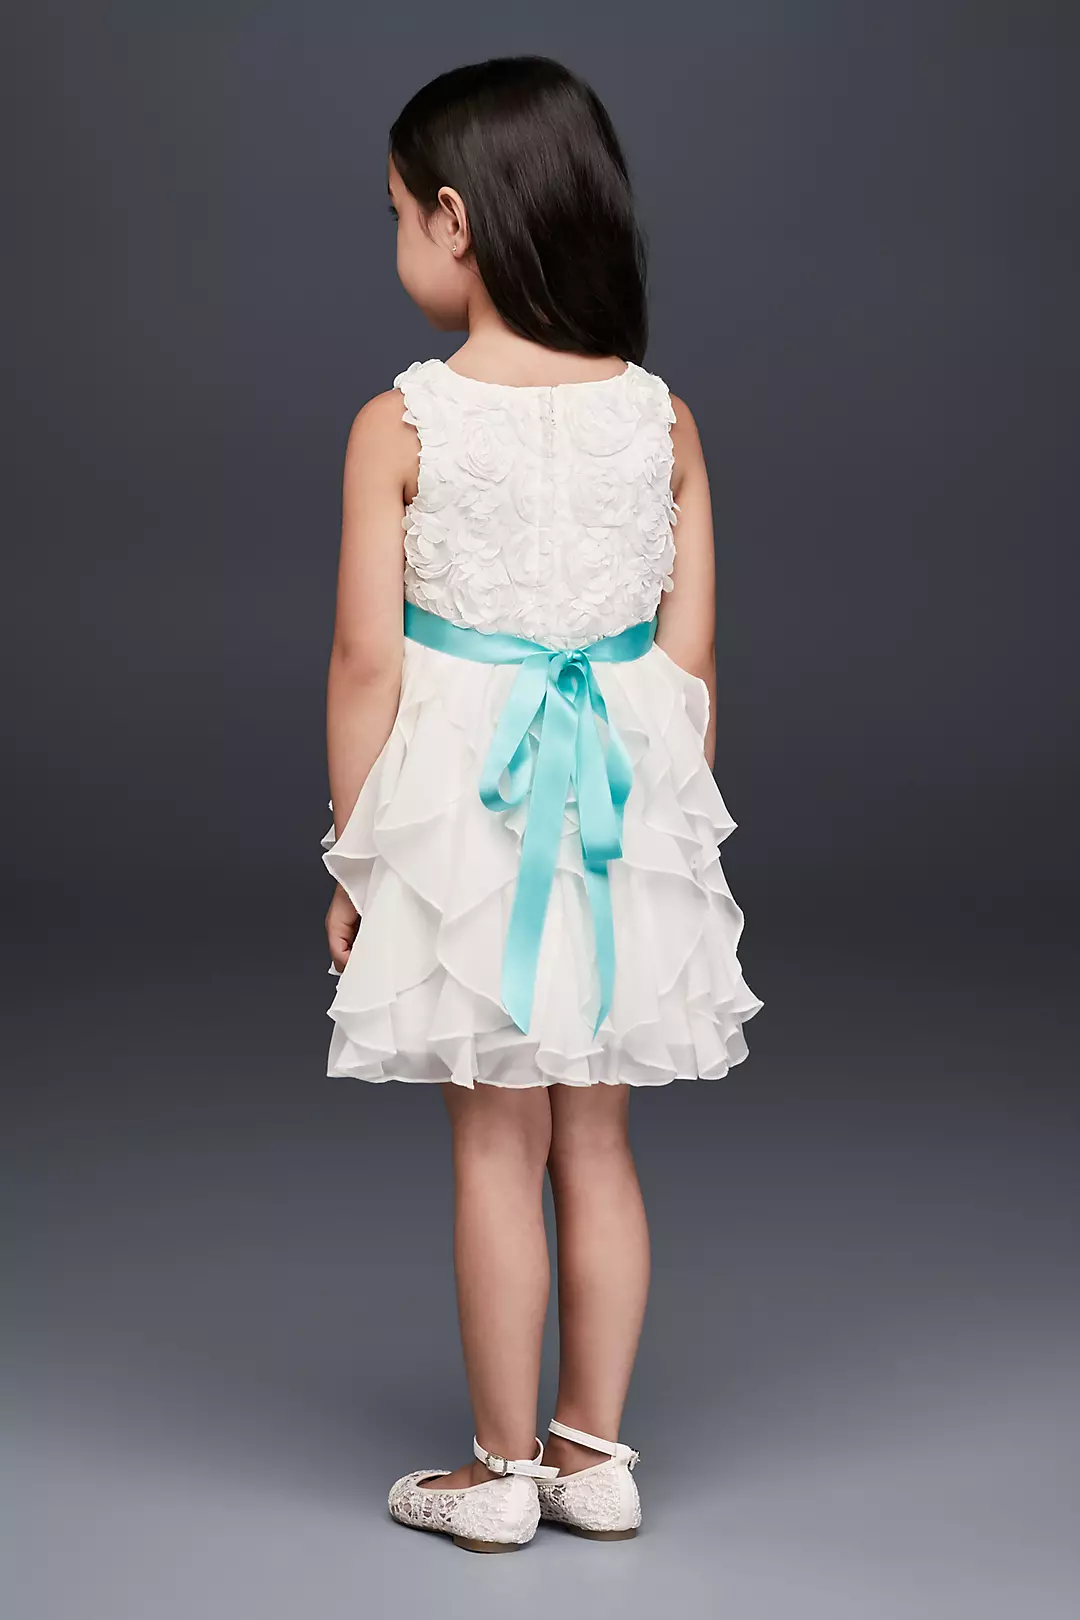 Rosette Flower Girl Dress with Ruffled Skirt Image 2